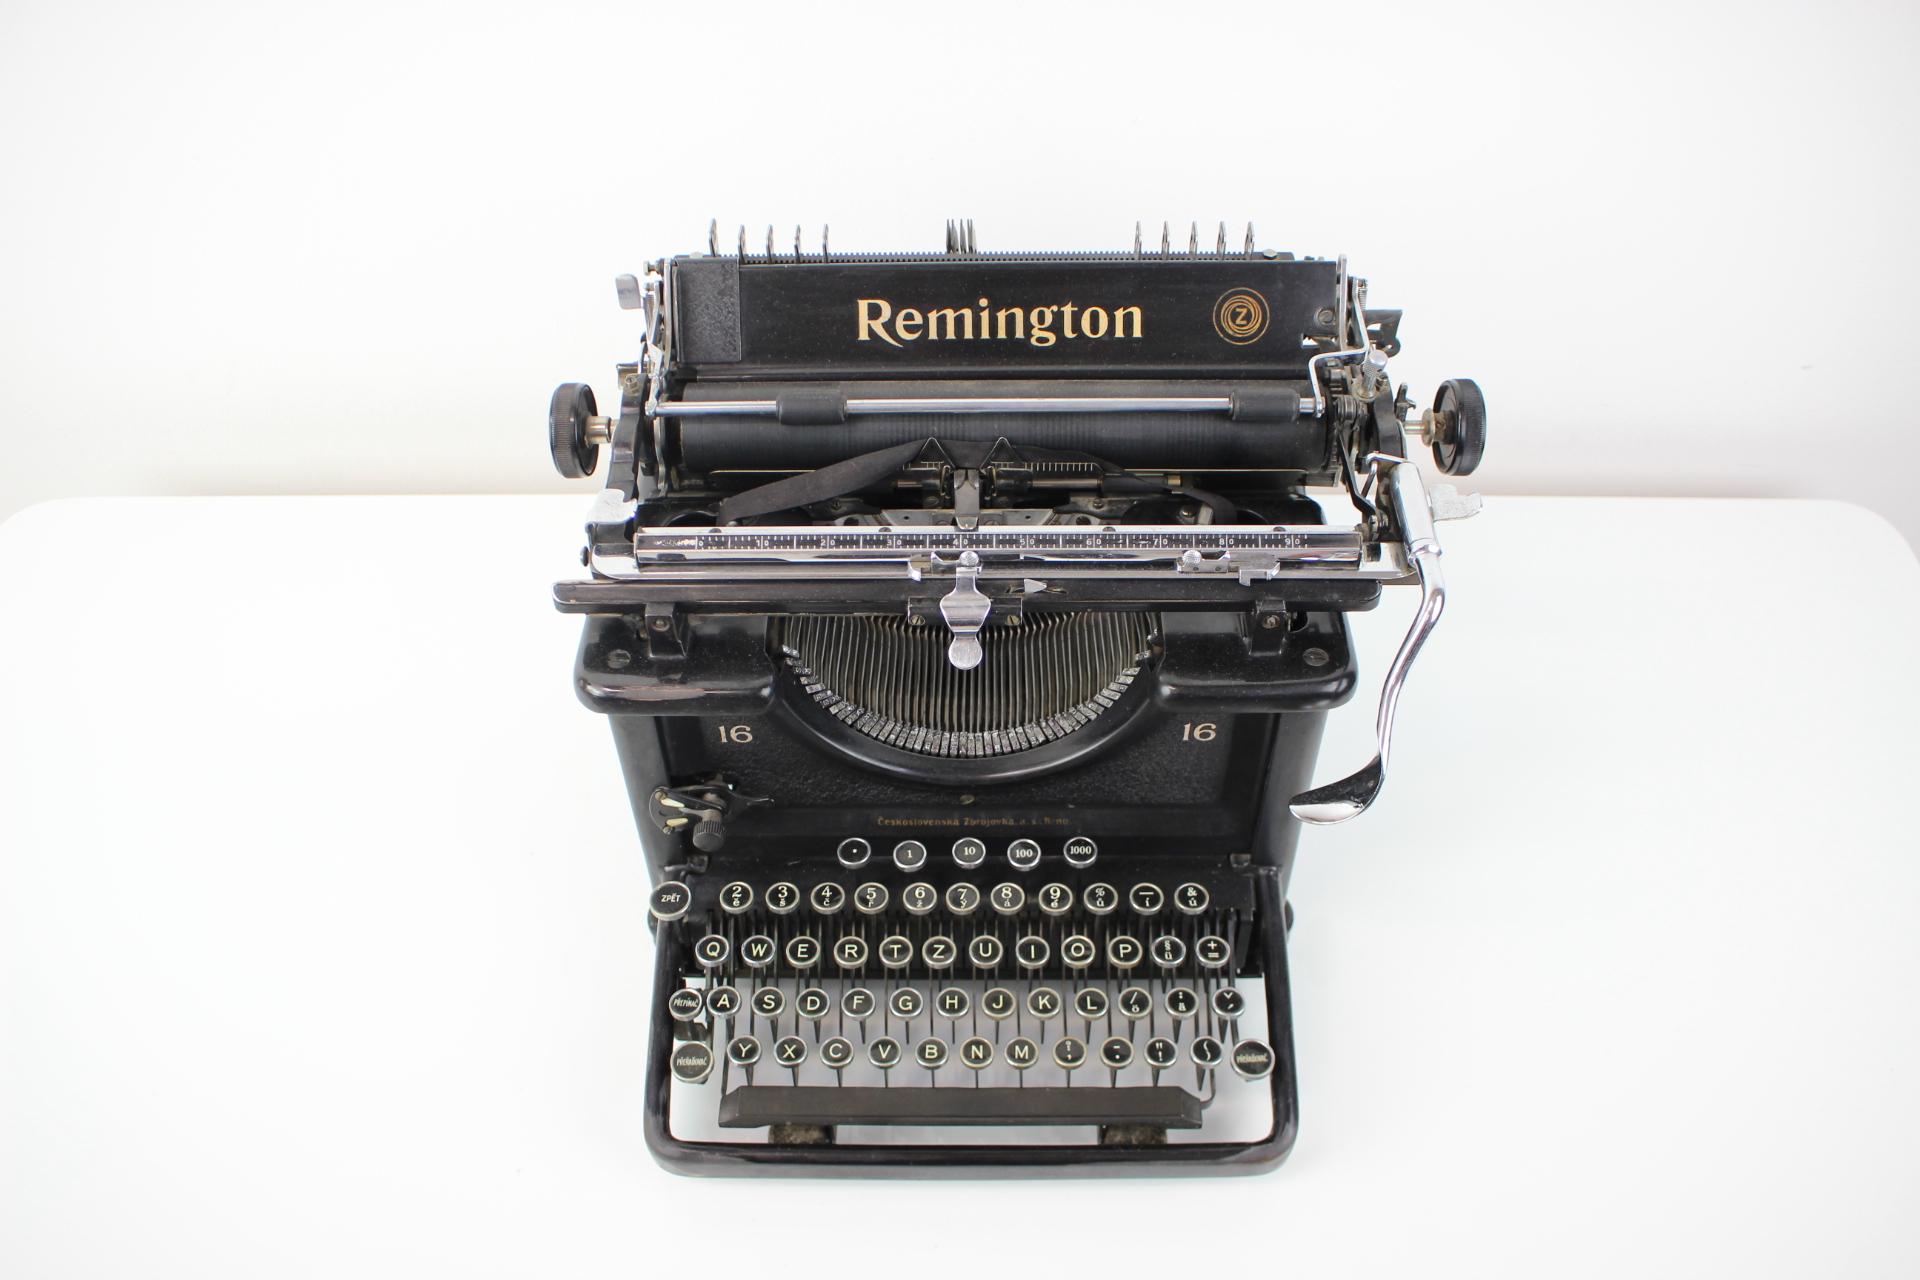 Oznaceni: Remington Z16
Vyrobeno v Ceskoslovensku. Výroba zacala v roce 1934
Vyrobeno z kovu, oceli, chromu
Leštené
Dobrý puvodní stav, funkcní
Mezerník se nevrací.